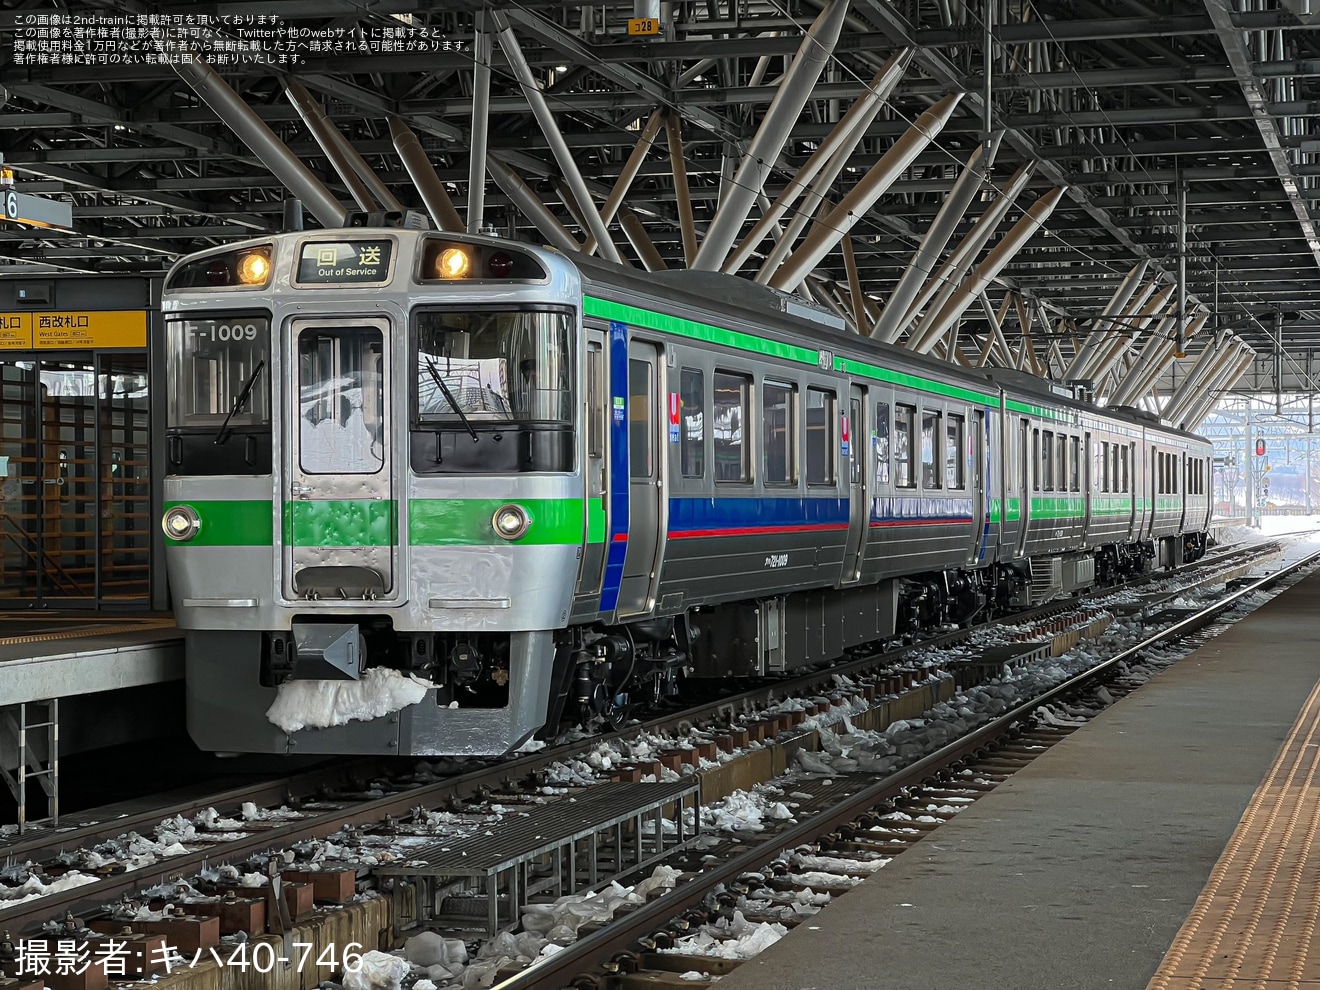 【JR北】721系が旭川地区から撤退の拡大写真